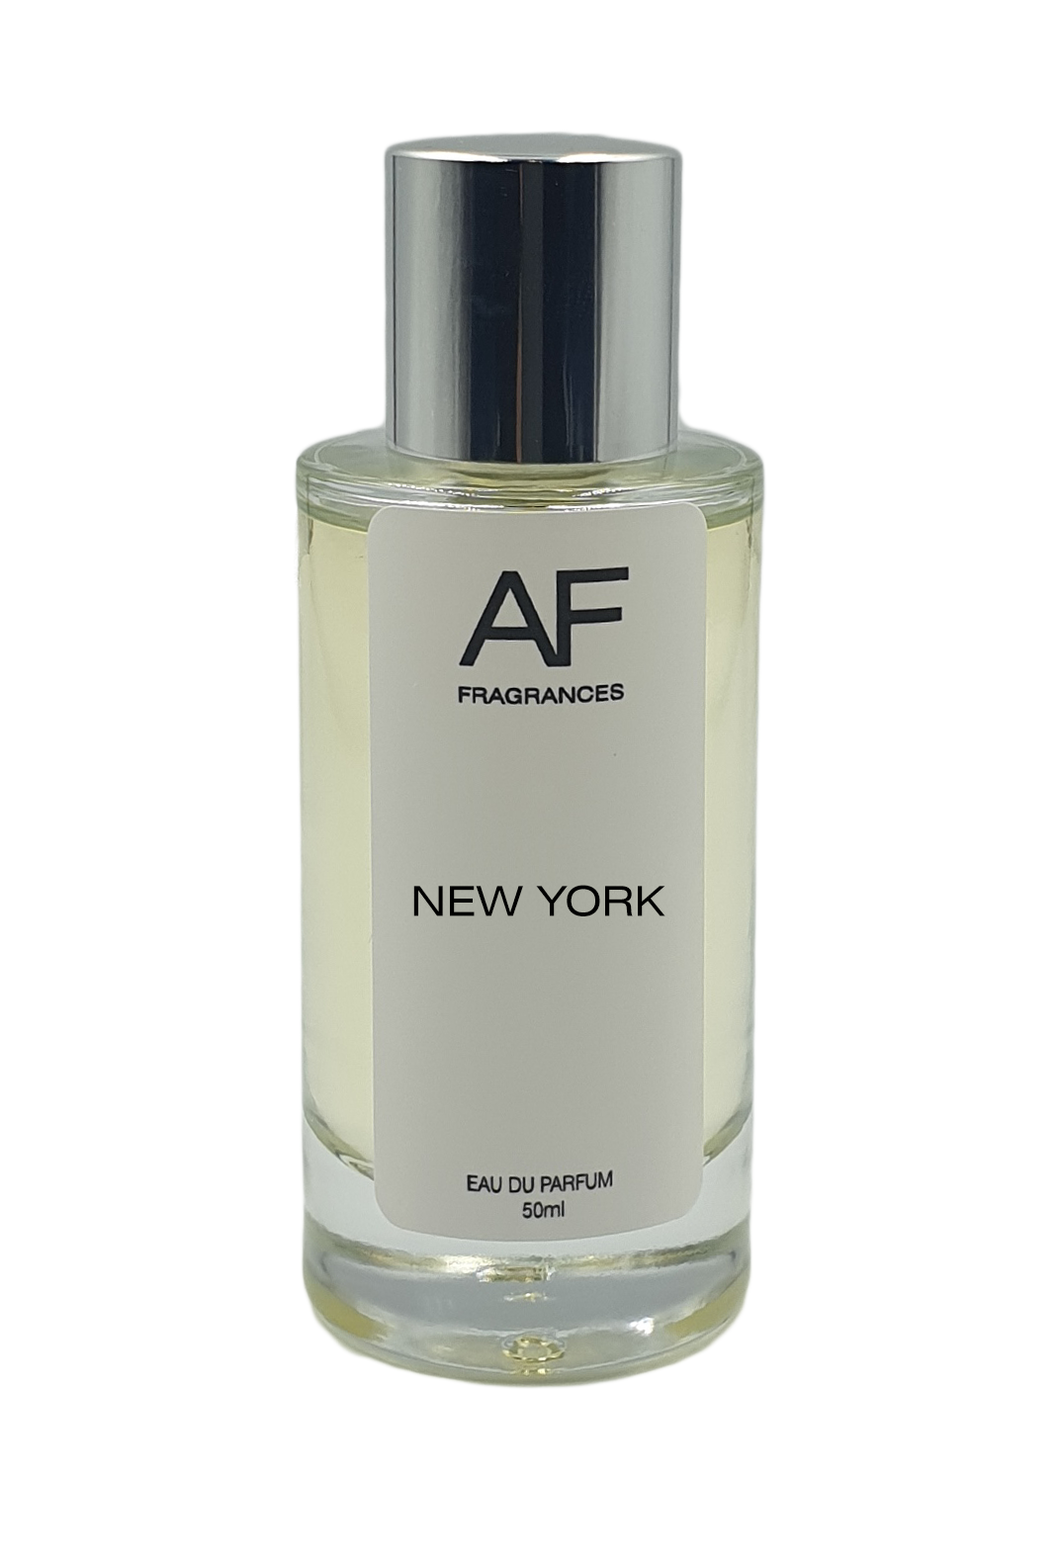 New York - AF Fragrances